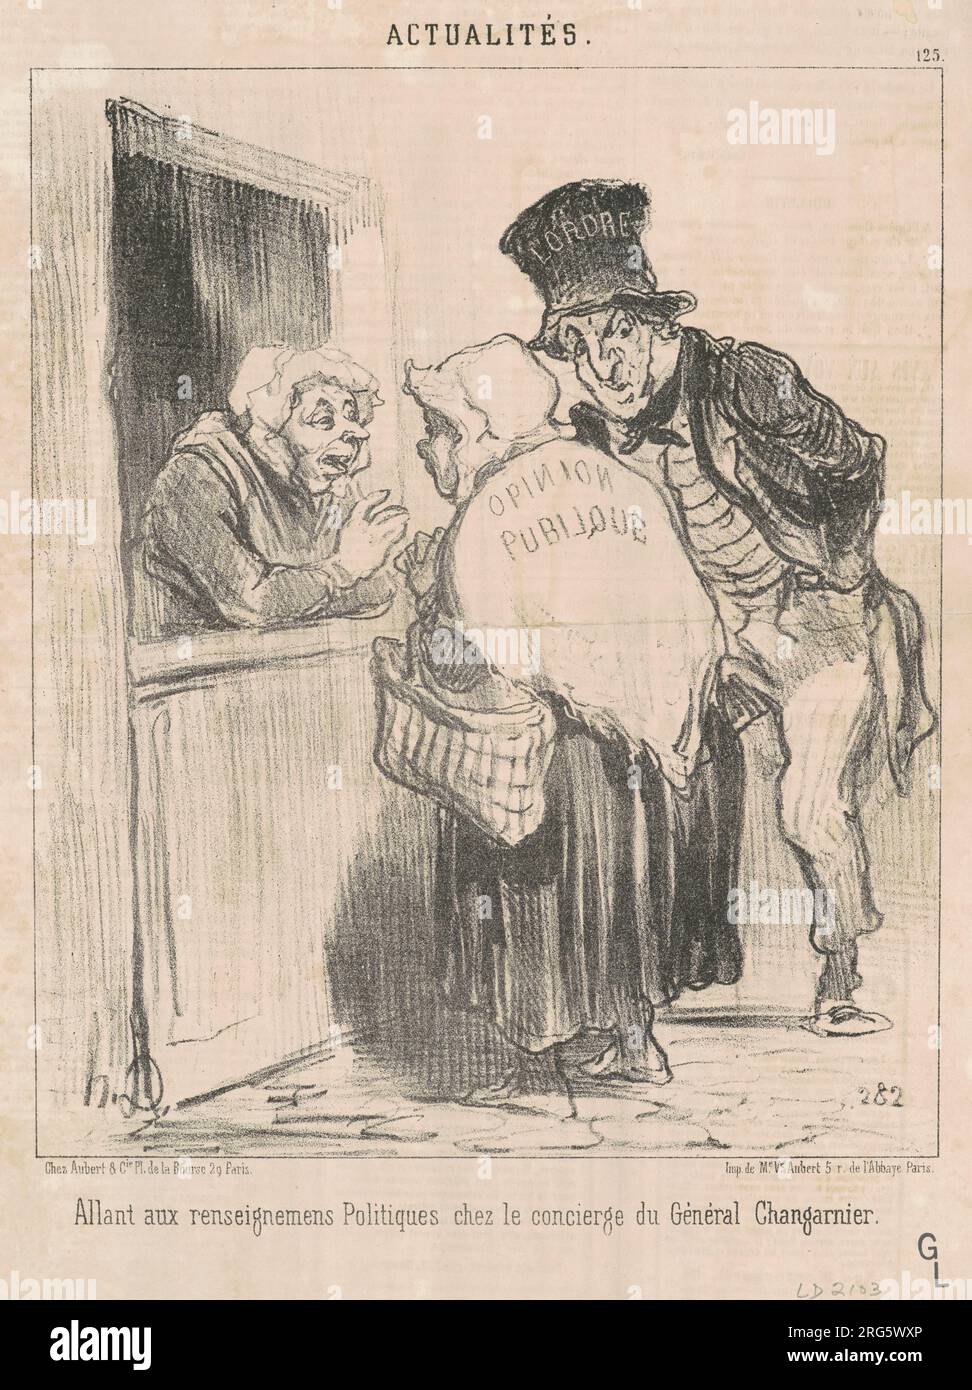 Allant aux renseignements politiques ... 19th century by Honoré Daumier Stock Photo